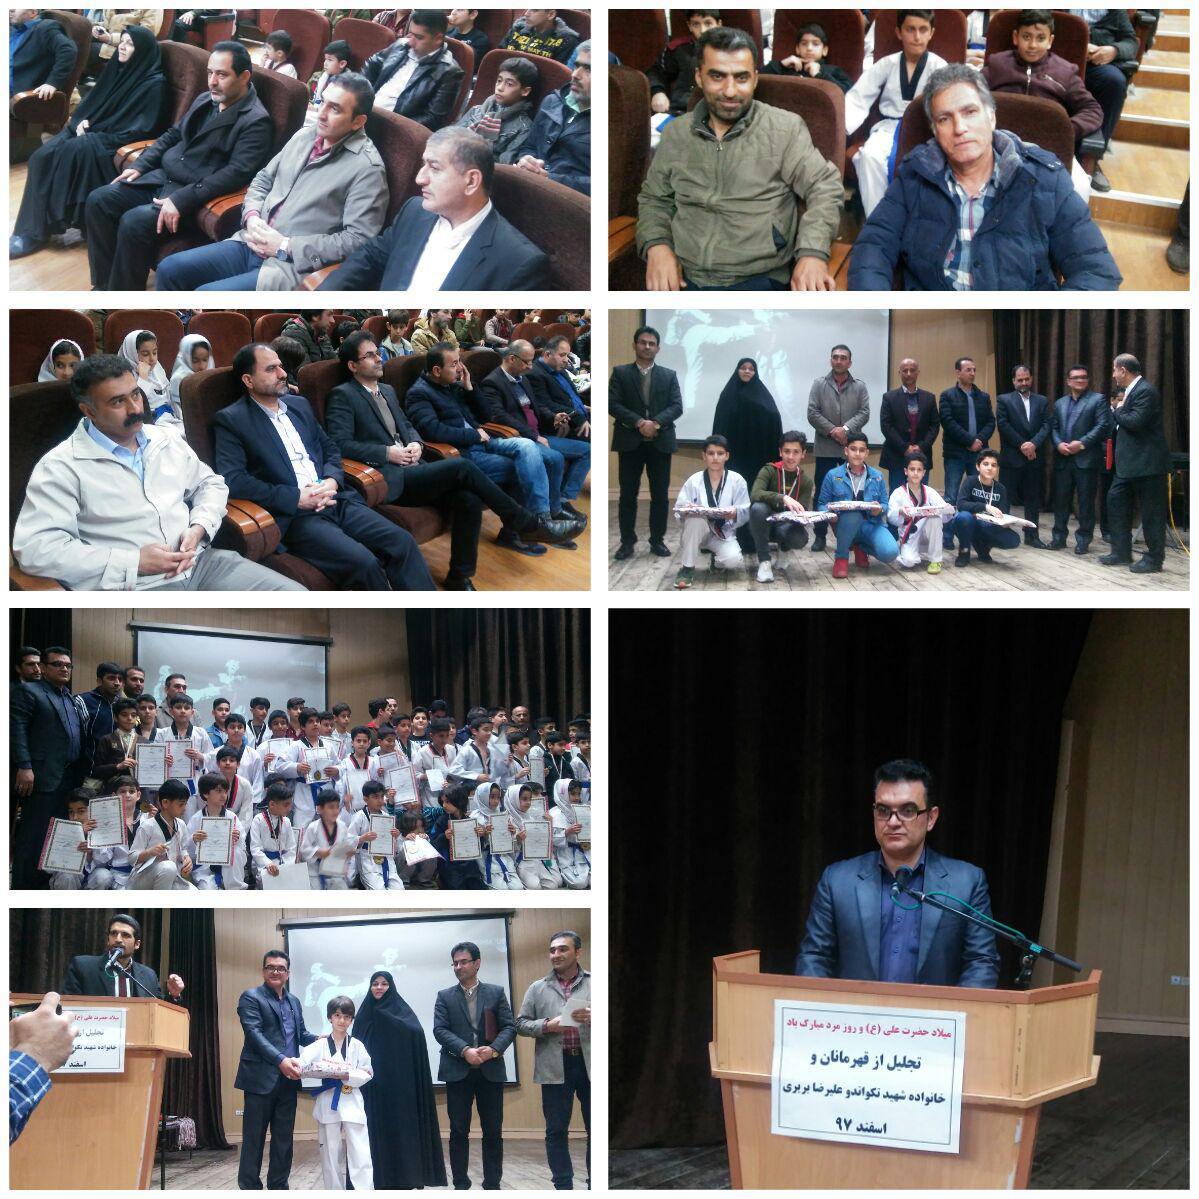 برگزاری آیین تجلیل از قهرمانان باشگاه شهید بریری بابلسر